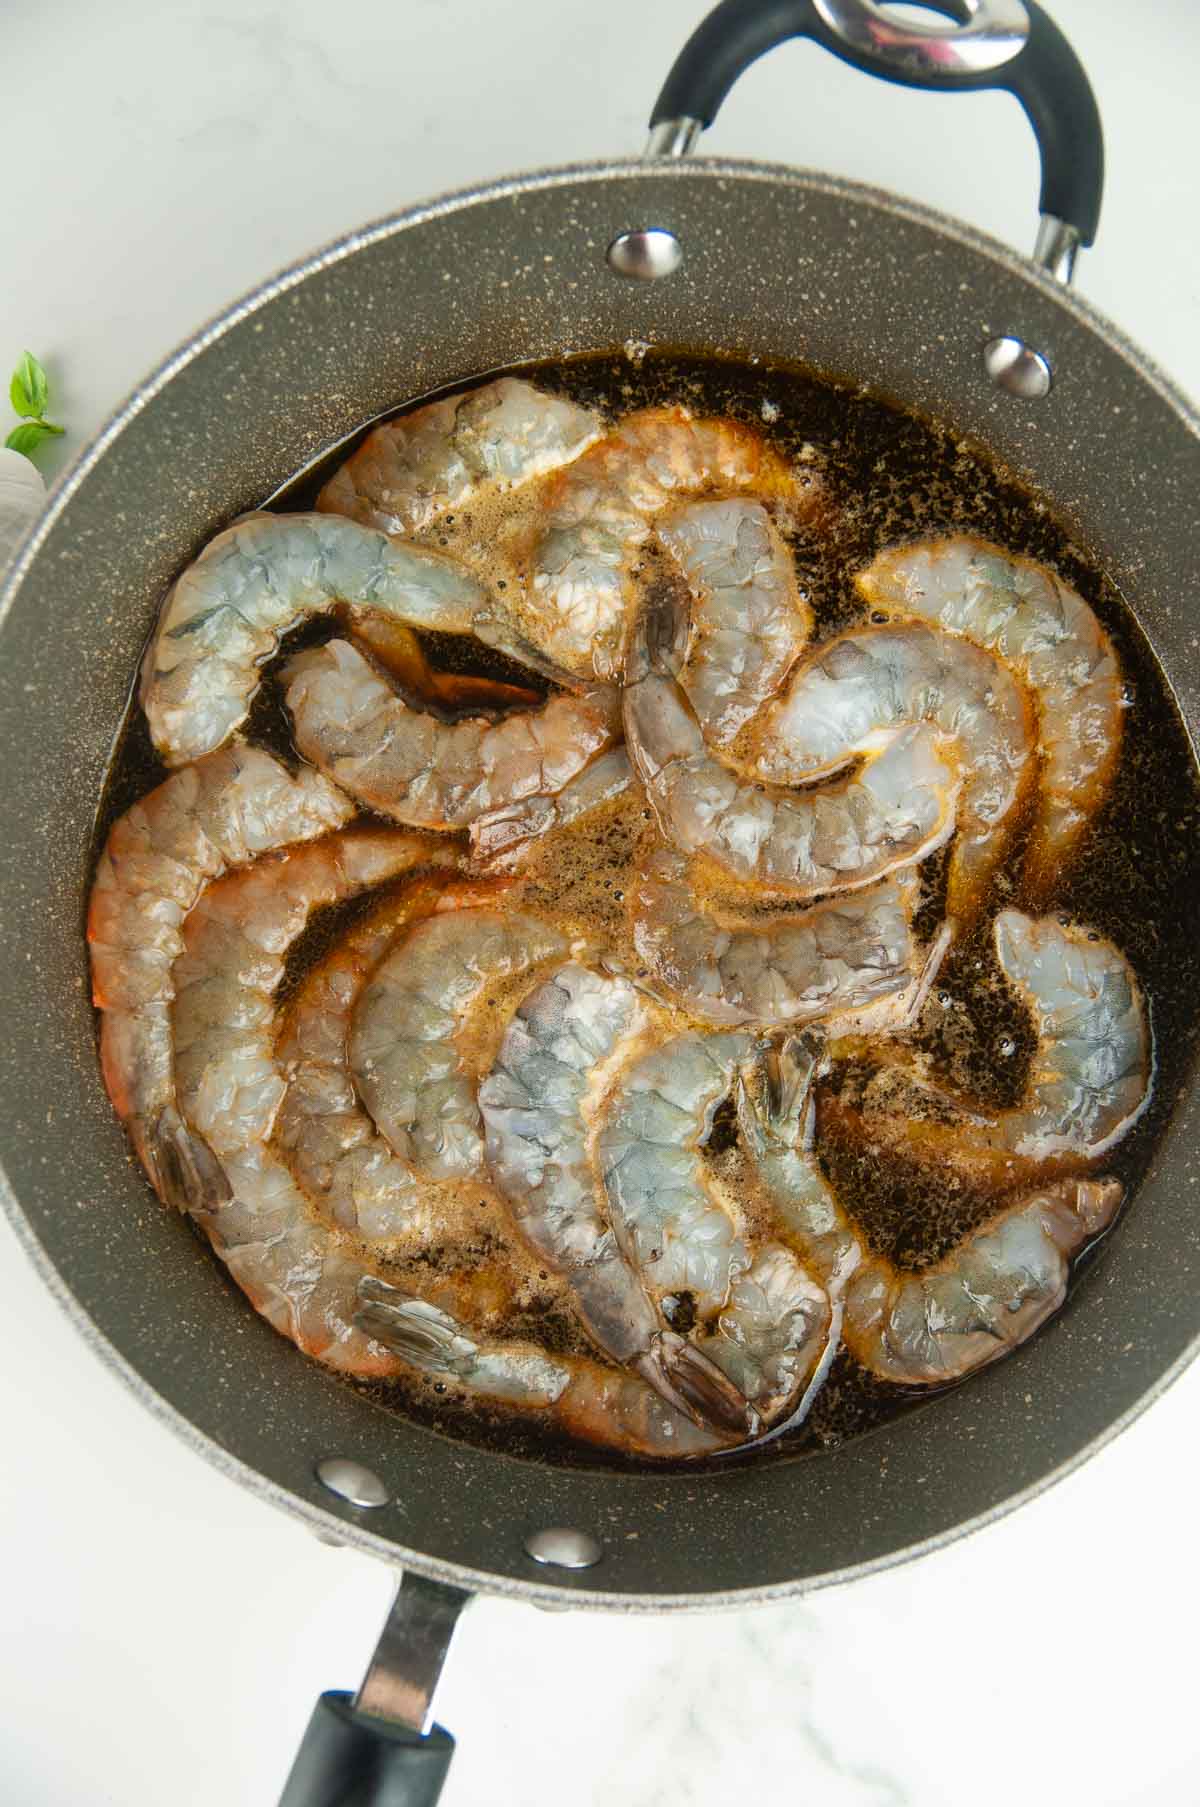 Cook the shrimp for shrimp caprese pasta